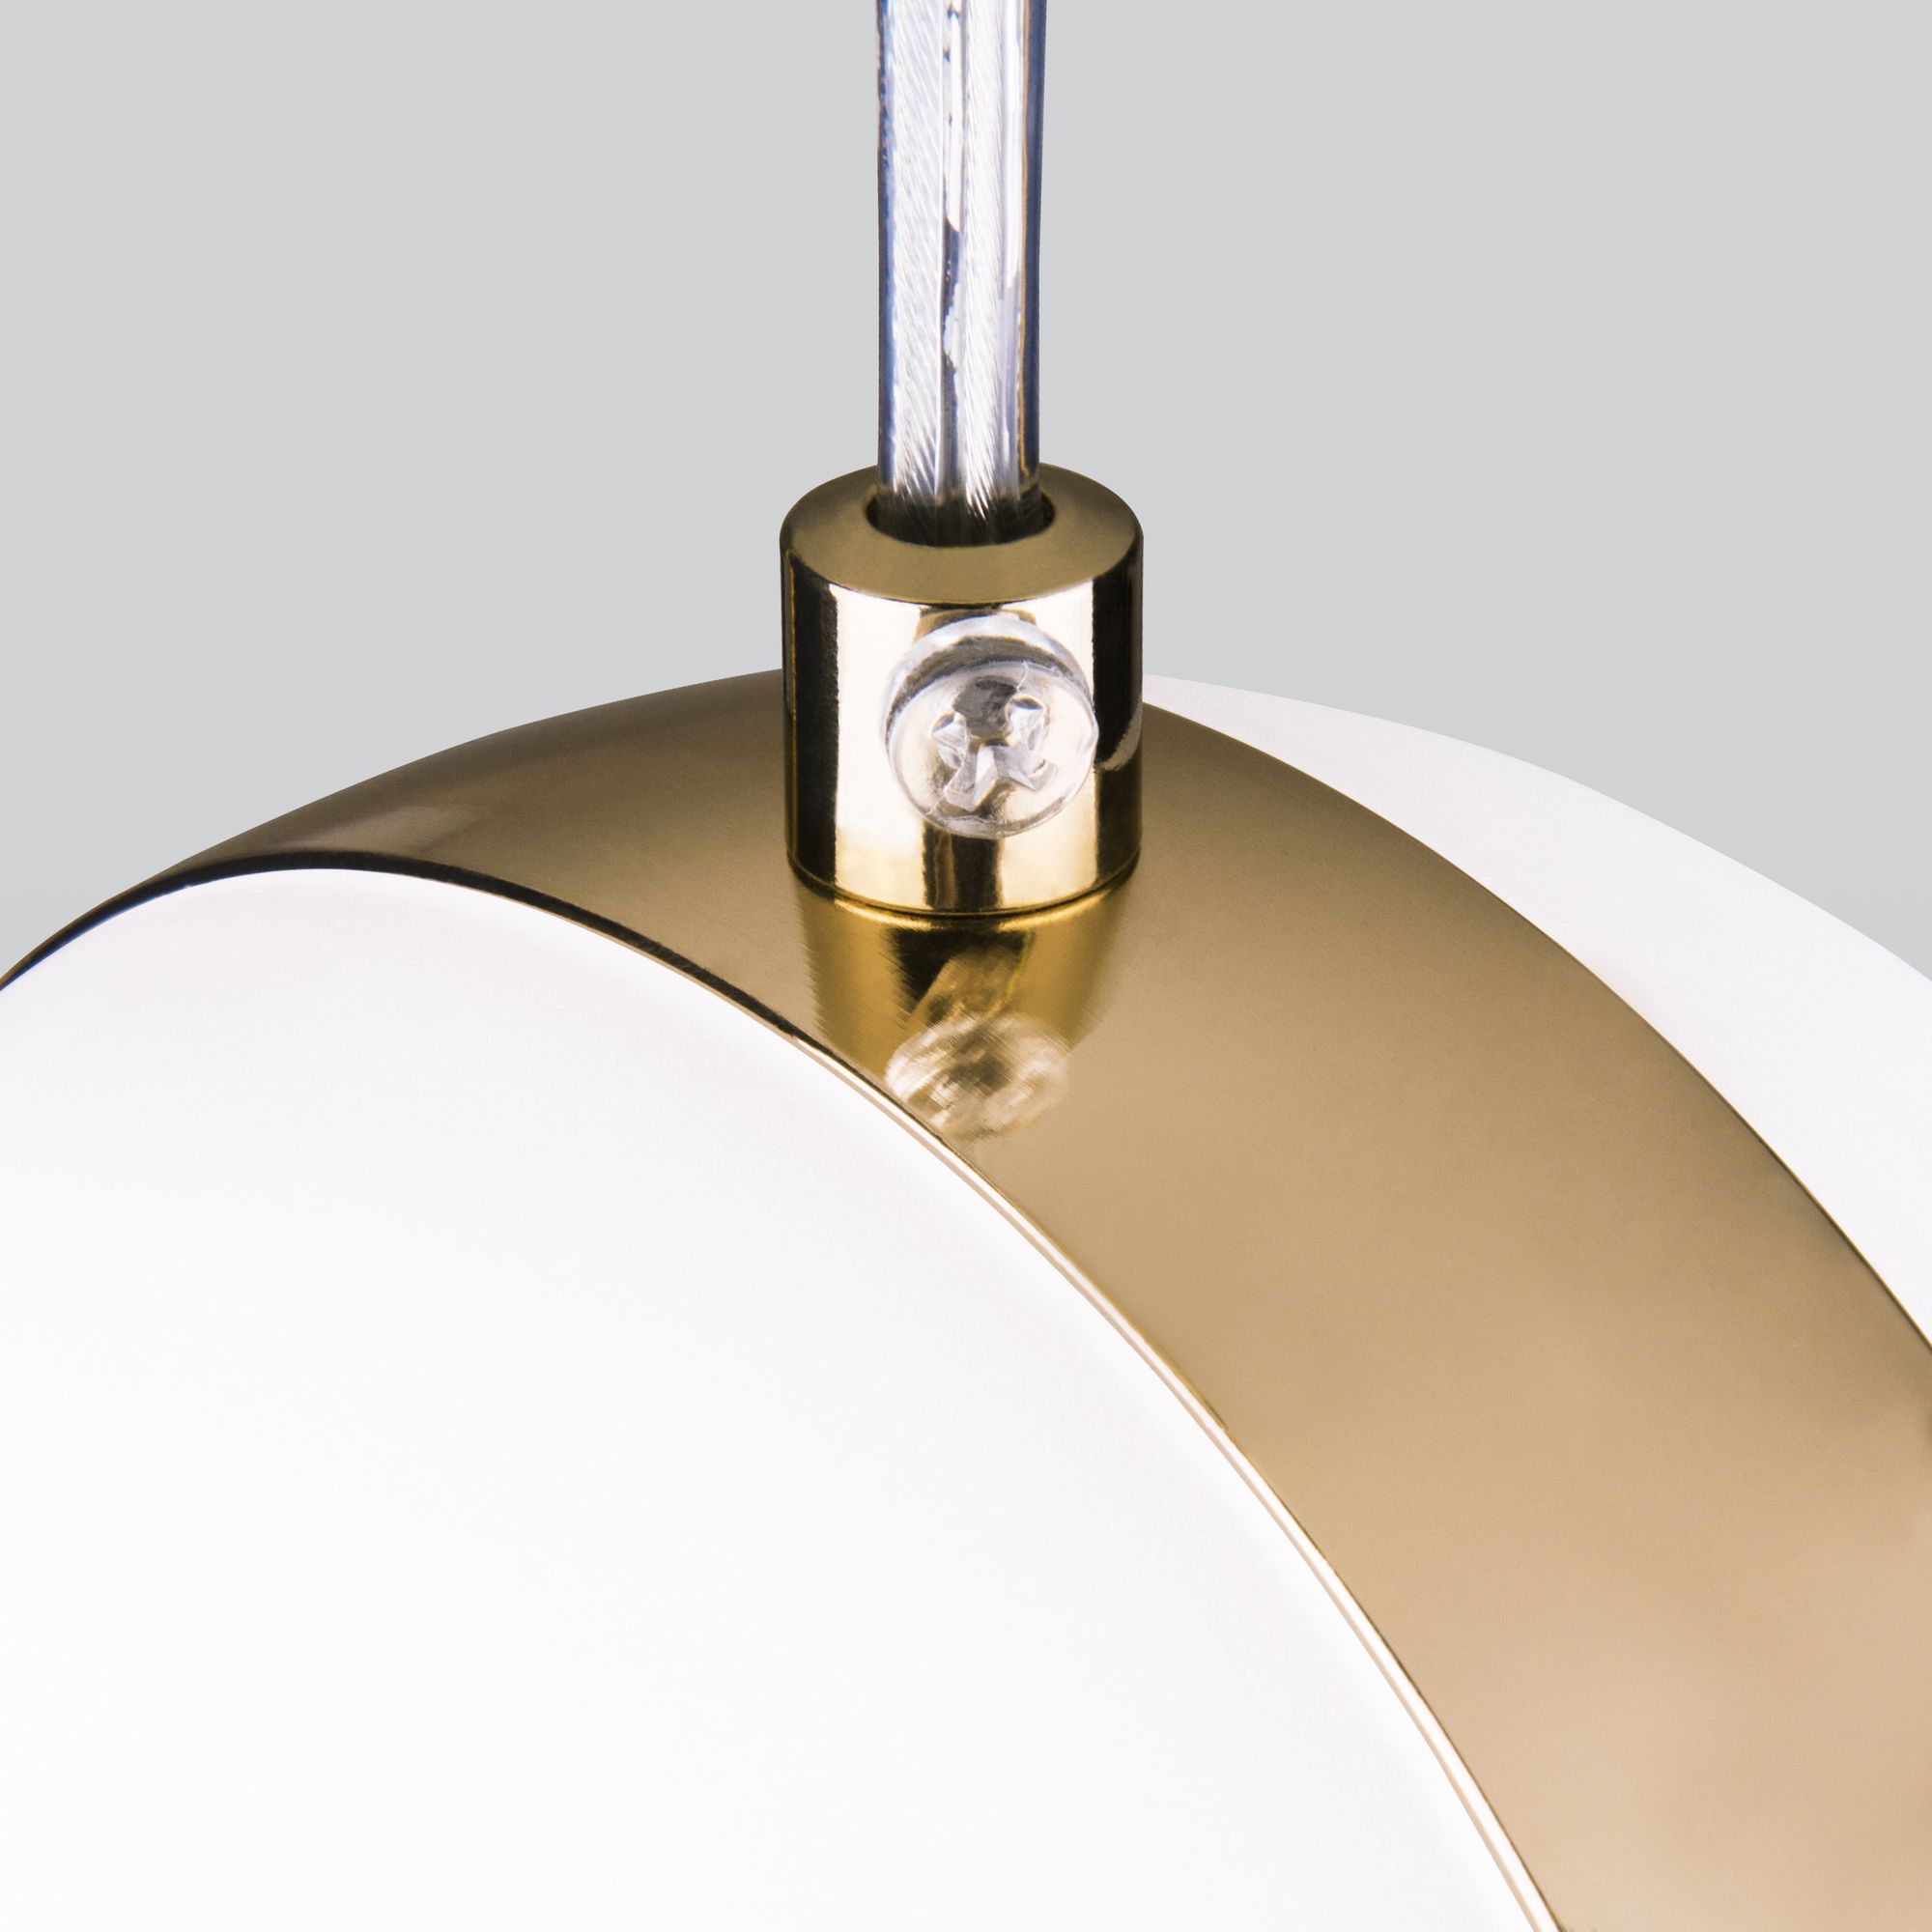 Подвесной светодиодный светильник белый / золото DLN050  GX53